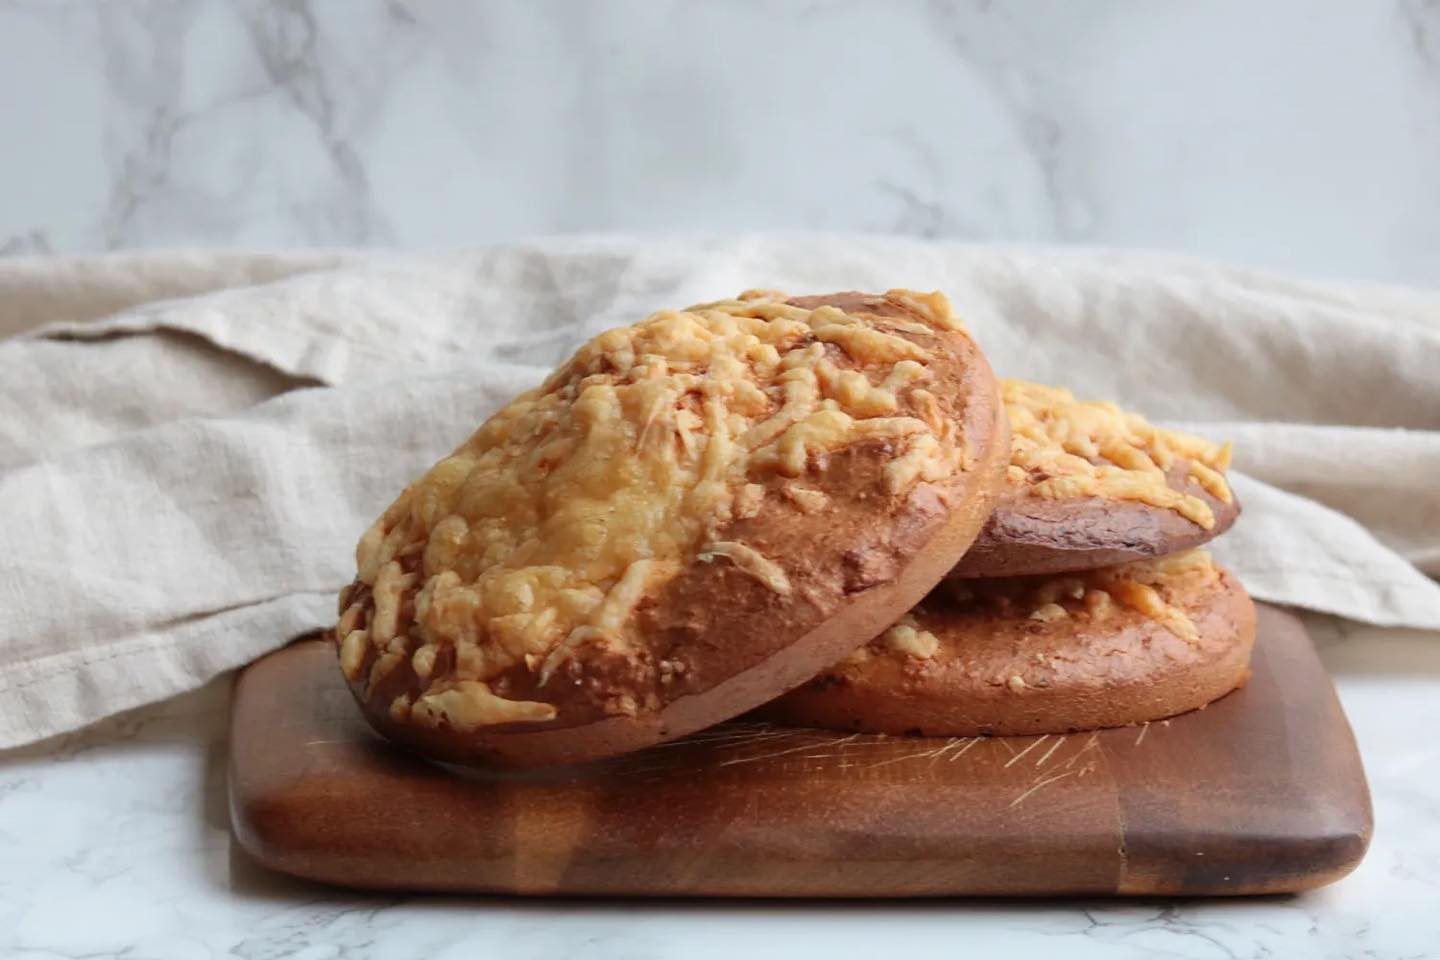 Als ik een drukke week voor de boeg heb, vind ik het heerlijk om een voorraadje te hebben van broodjes of crackers. In het weekend bak ik dan het liefst alvast voor de rest van de week ❤️ Deze dunne kaasbroodjes met pit bijvoorbeeld. Deze kan je namelijk makkelijk invriezen! Gemak dient de mens 🥰 Het recept vind je op mijn website onder de naam: “dunne kaasbroodjes met pit”. Fijne maandag! X #koolhydraatarm #koolhydraatbeperkt #lowcarb #keto #oanhskitchen #glutenvrij